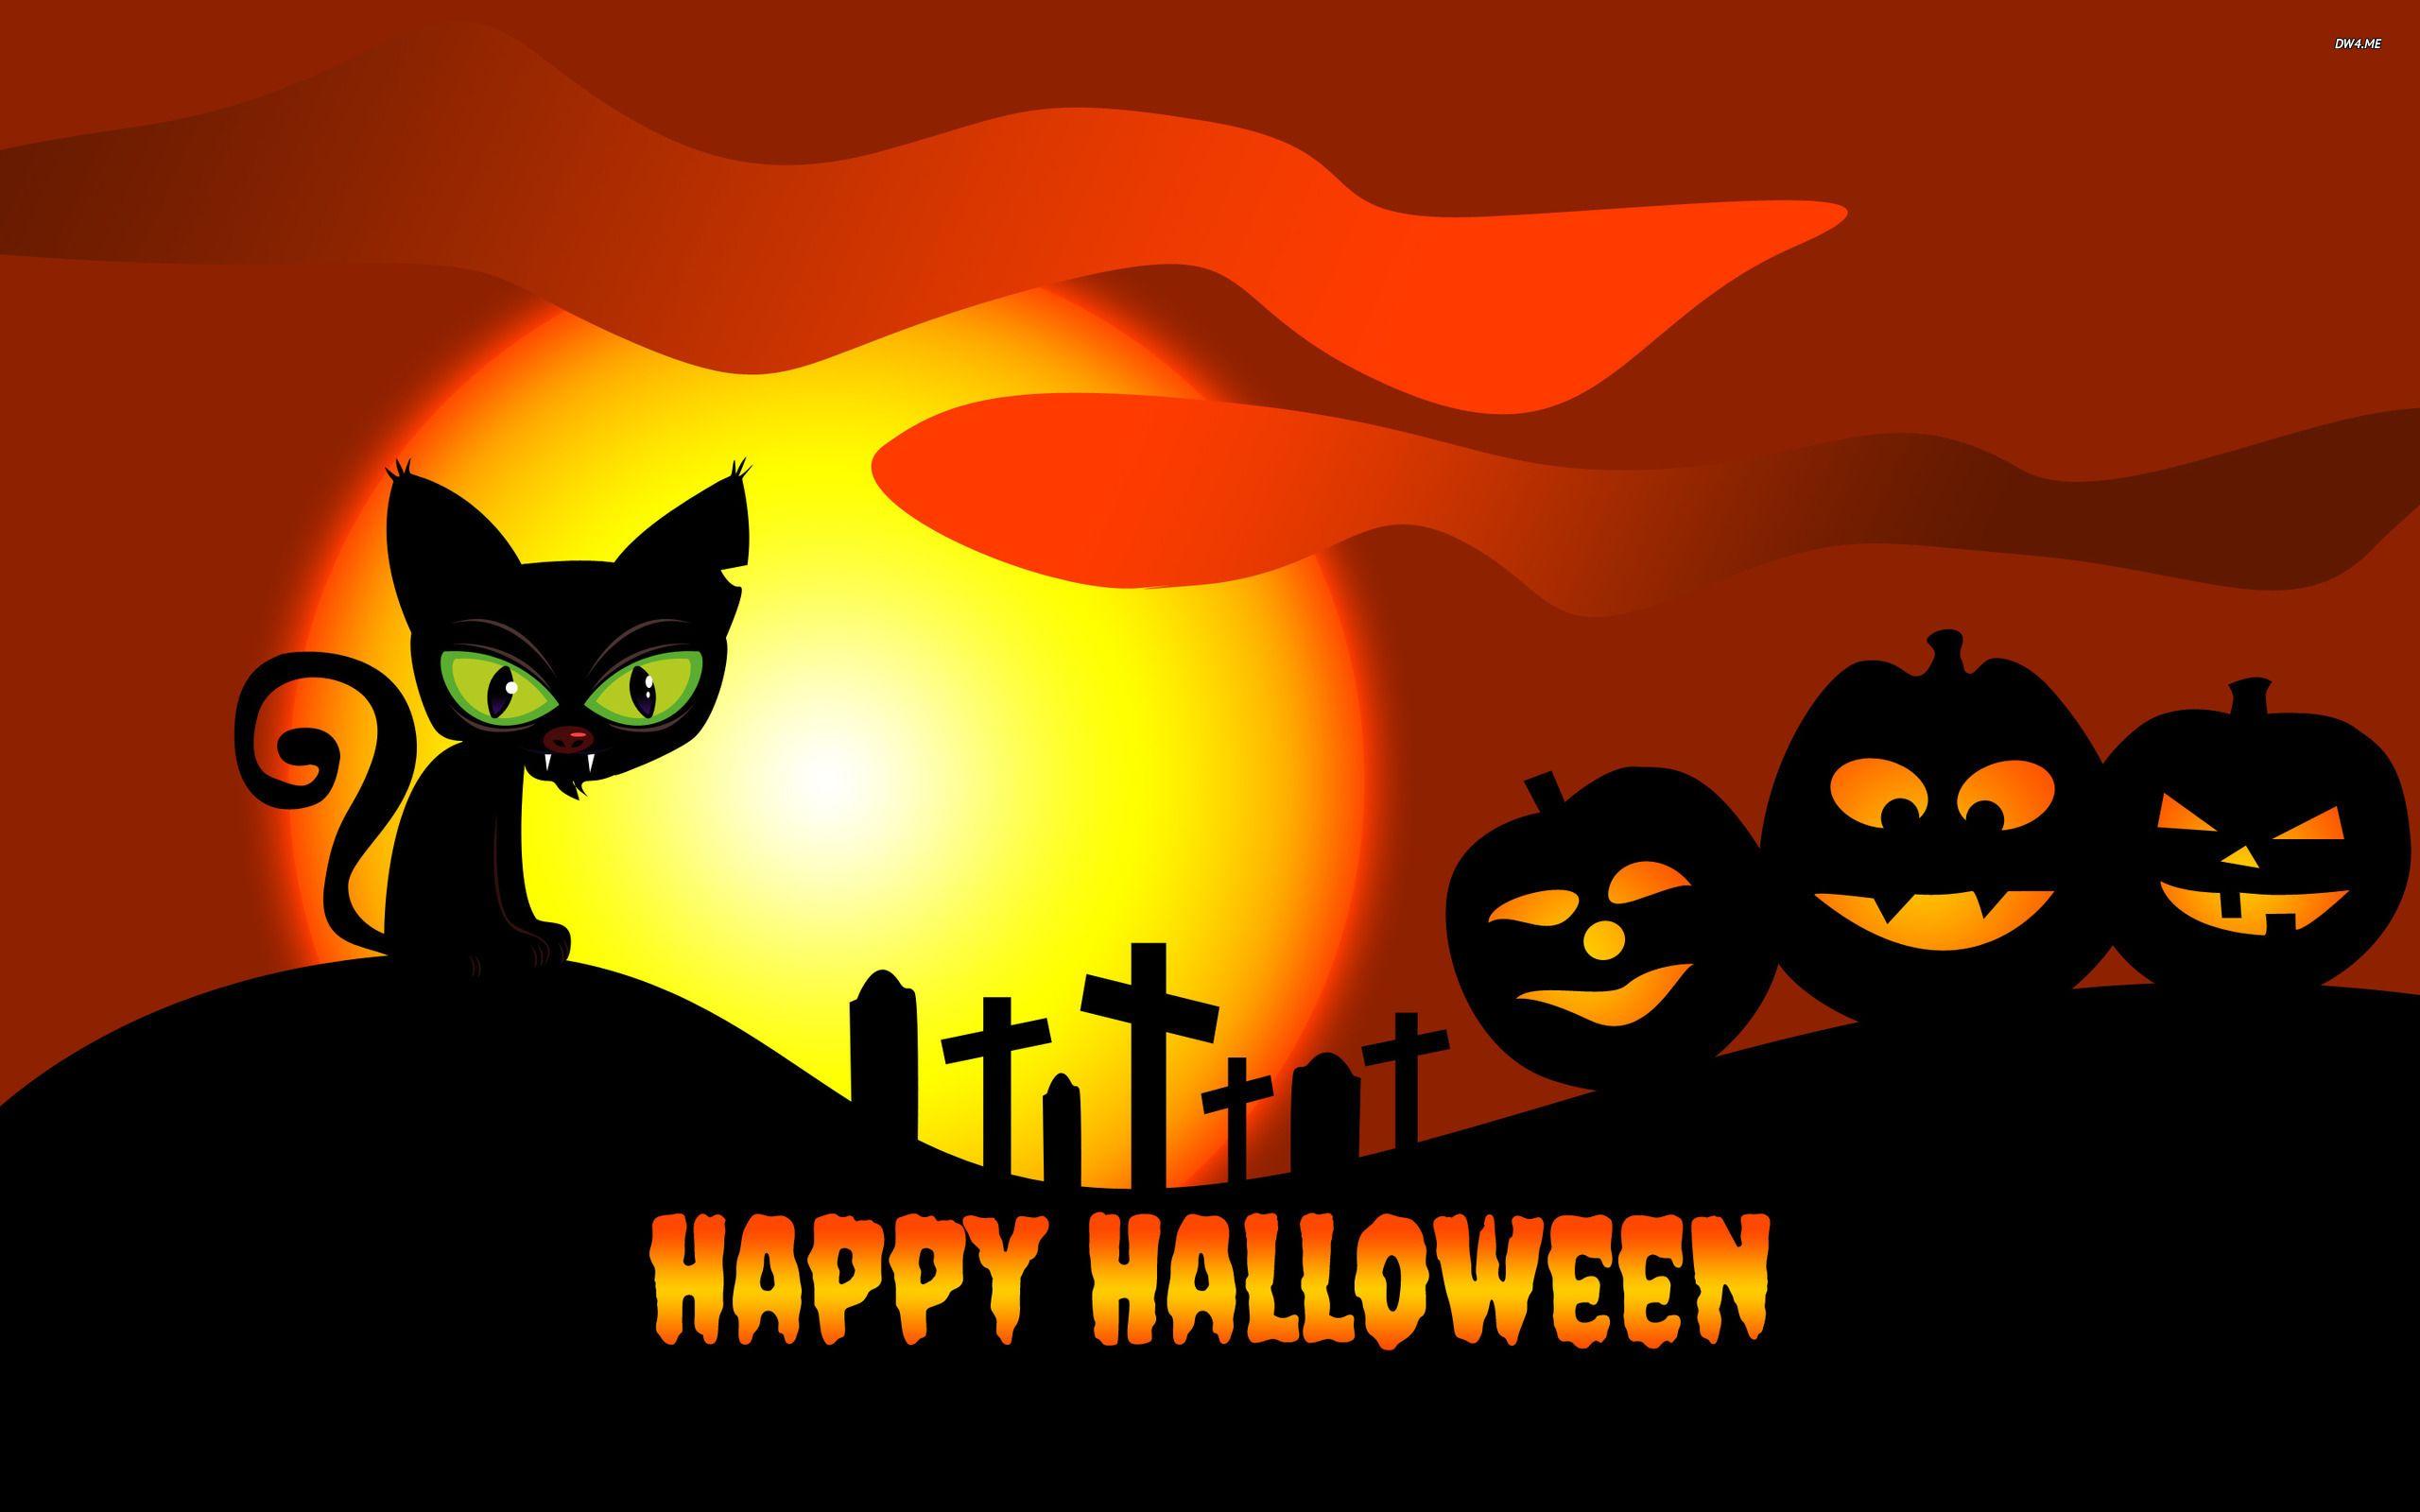 Cool Happy Halloween Wallpaper For Mobile, iPhone, Desktop